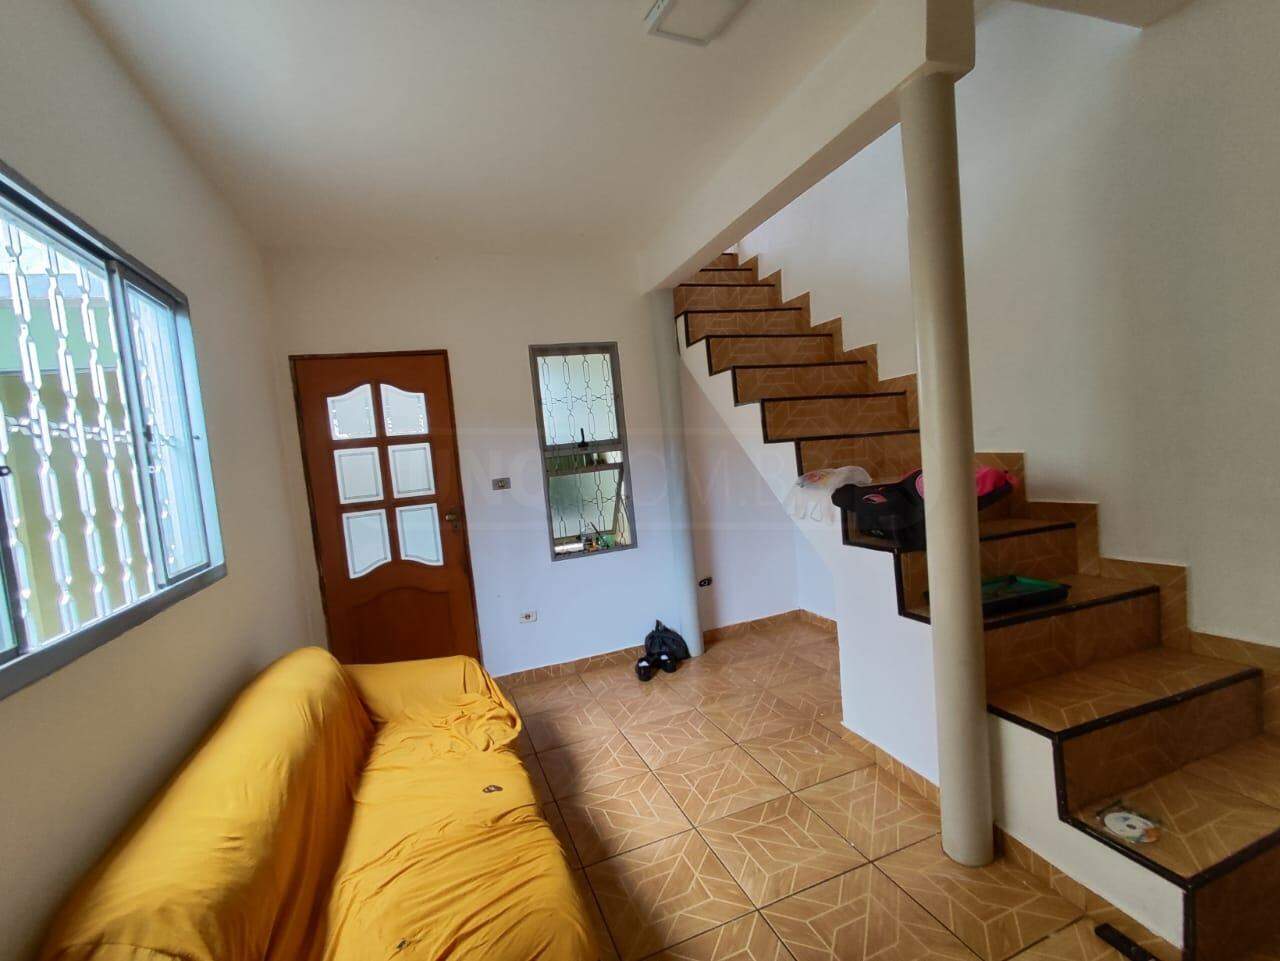 Casa à venda, 4 quartos, 2 vagas, no bairro Conjunto Residencial Vitório Cezarino em Rio das Pedras - SP